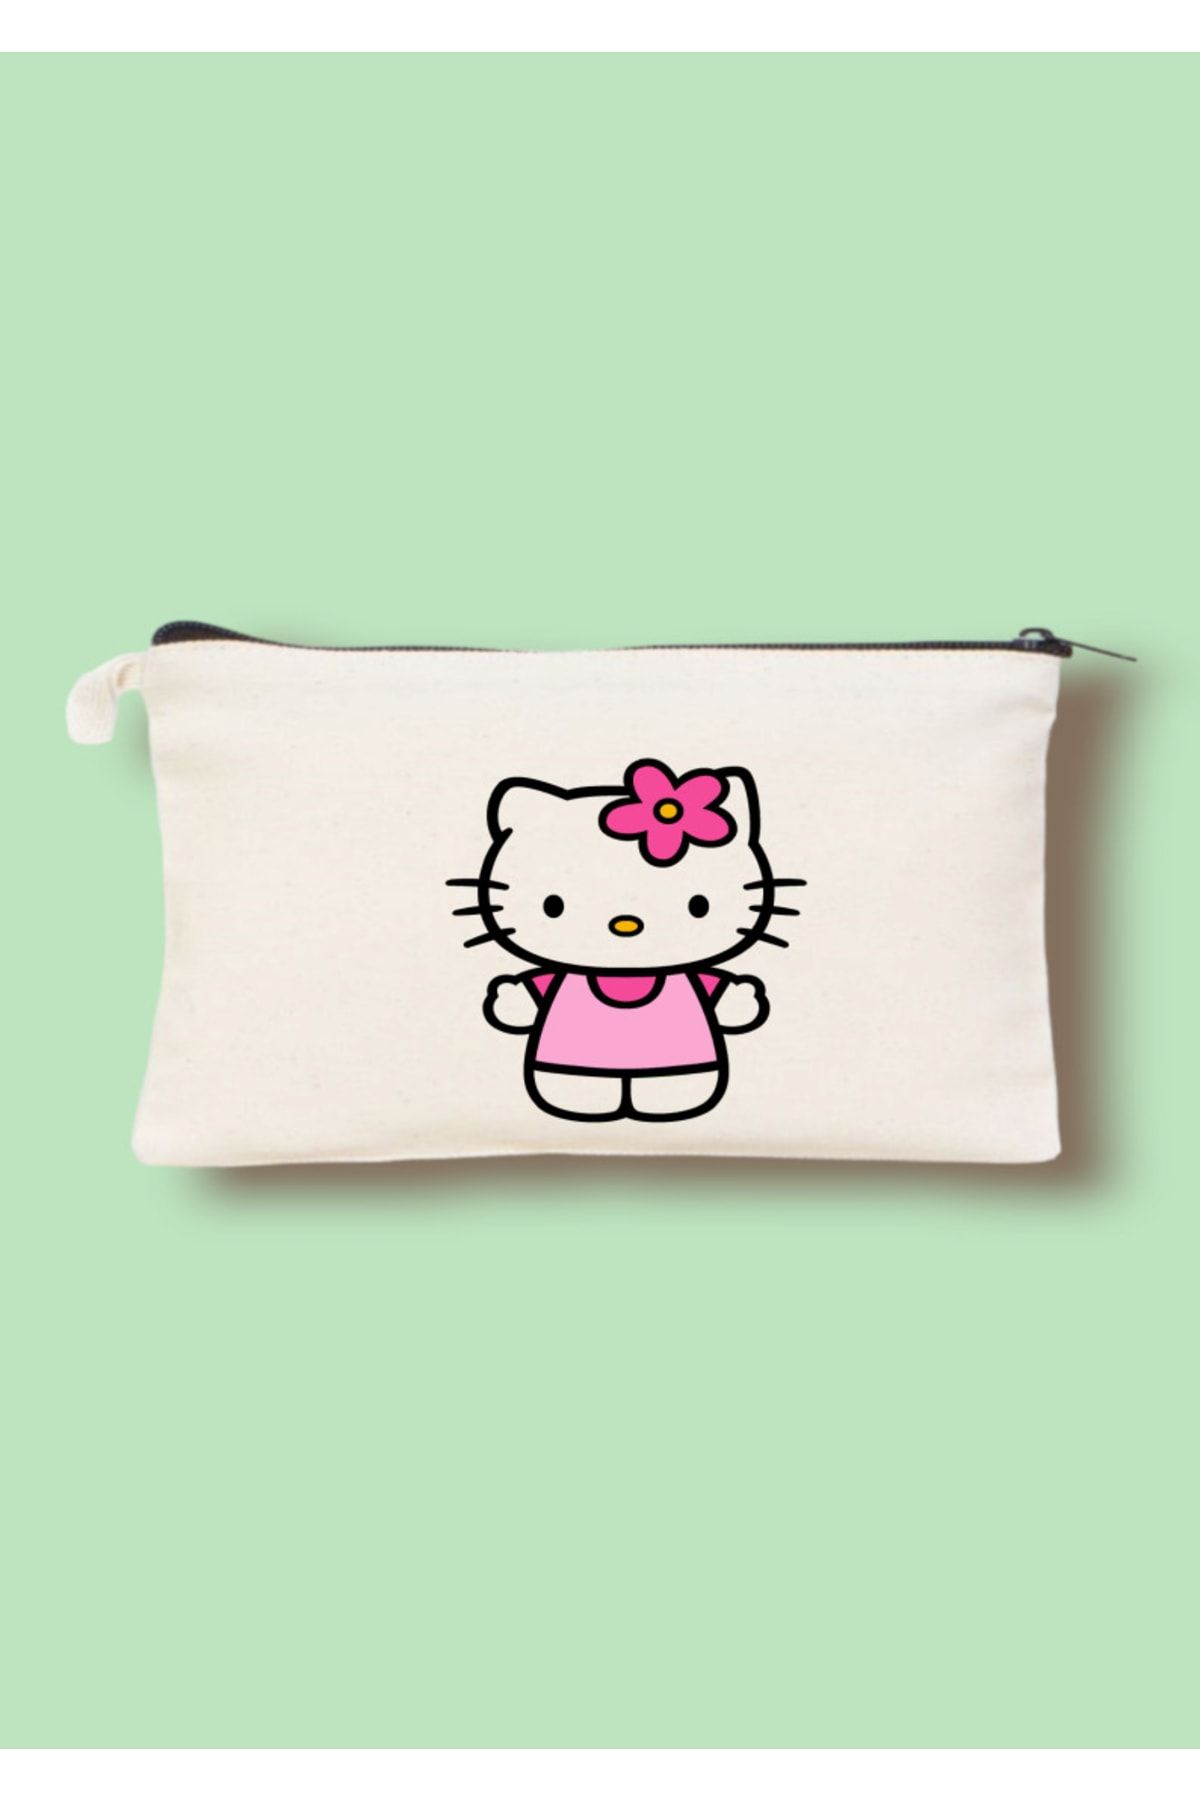 Cemira Hello Kitty Tasarım Clutch Çanta, Makyaj Çantası, Kalem Kutusu, Kalemlik 12-18